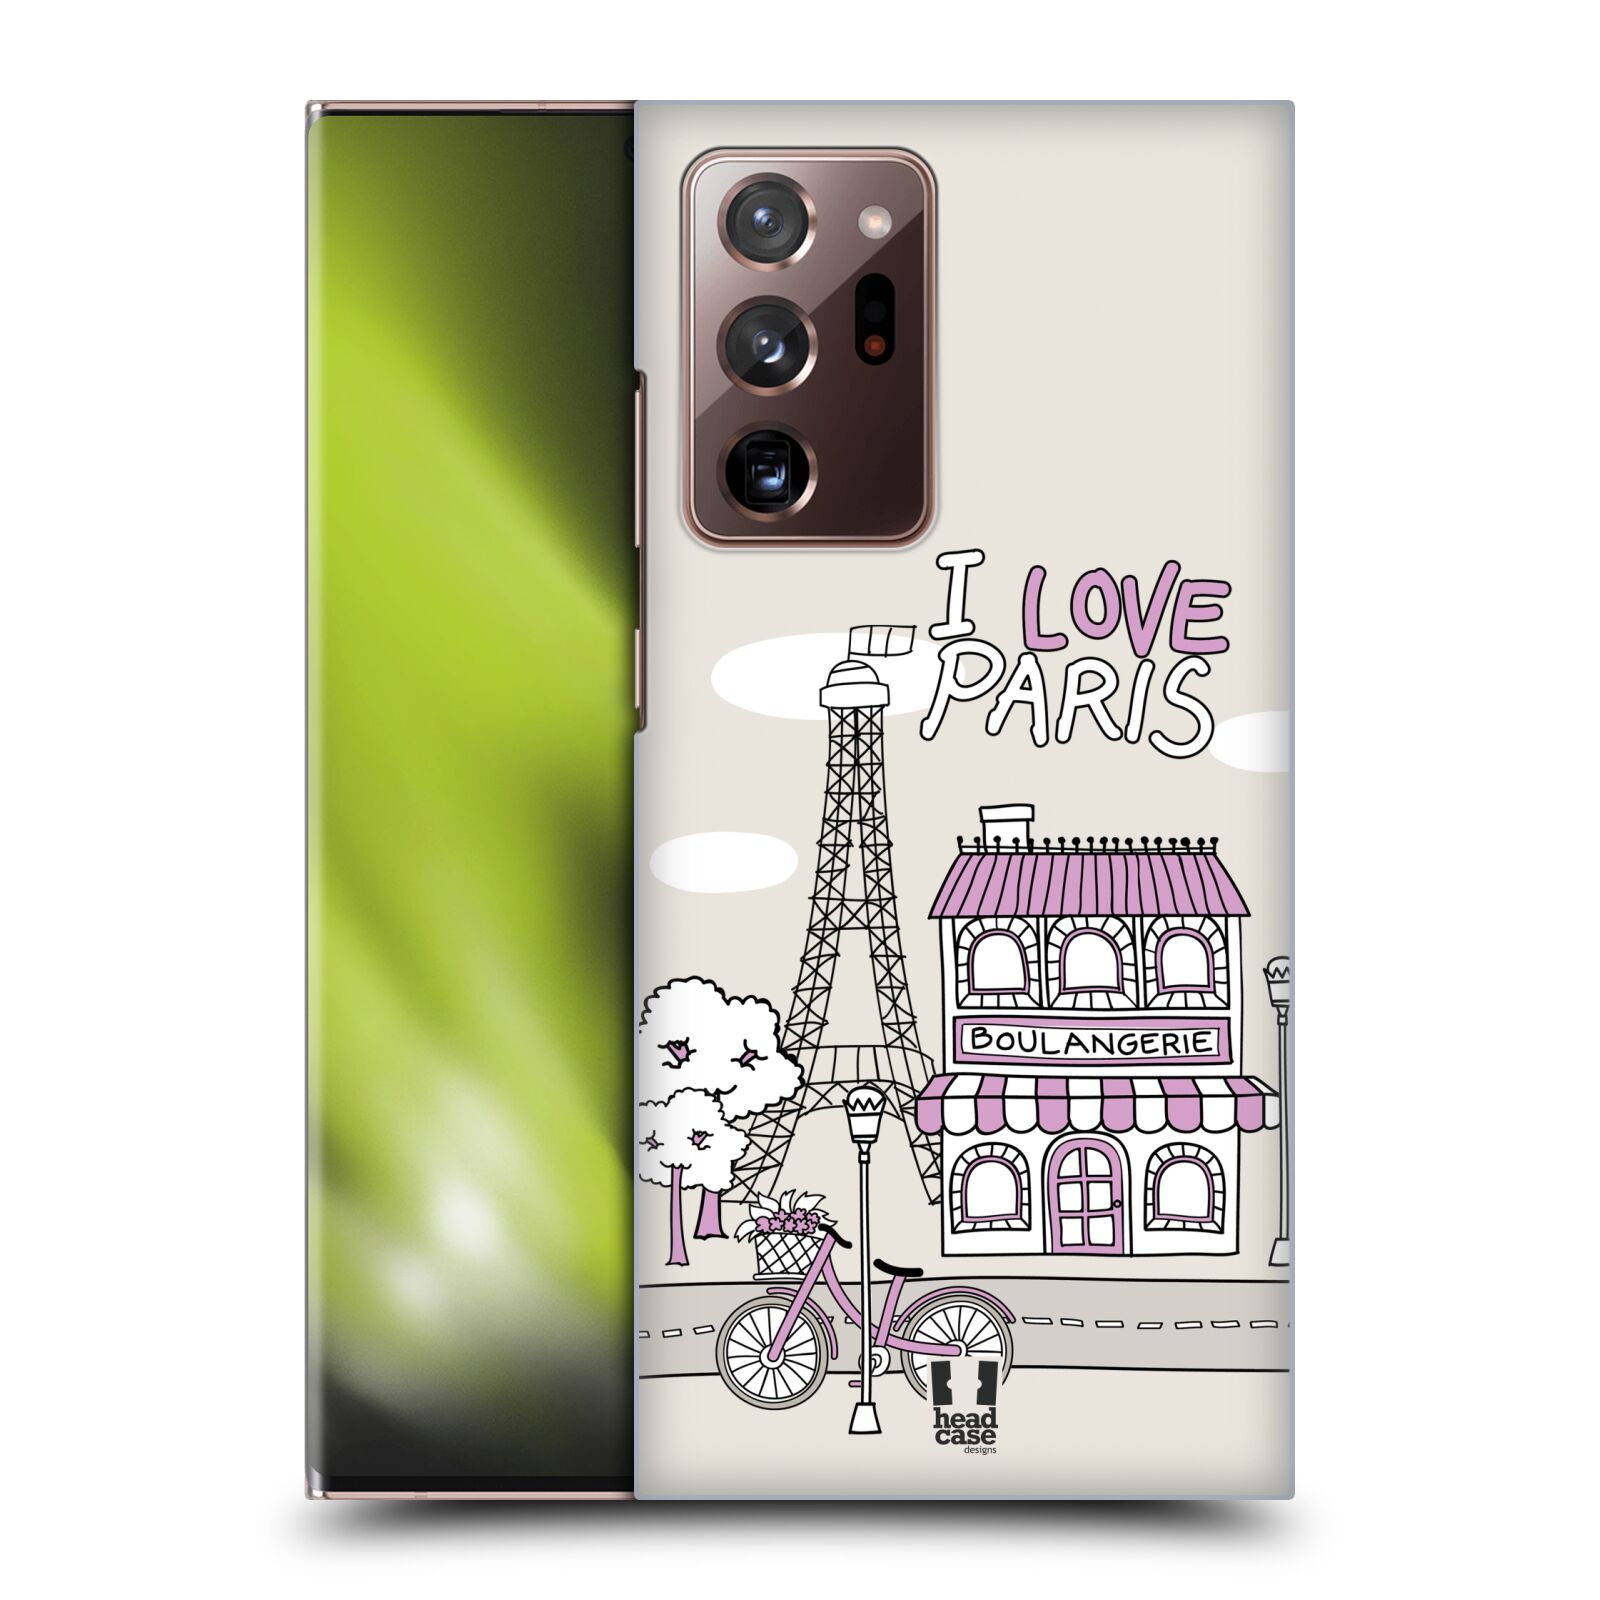 Plastový obal HEAD CASE na mobil Samsung Galaxy Note 20 ULTRA vzor Kreslená městečka FIALOVÁ, Paříž, Francie, I LOVE PARIS